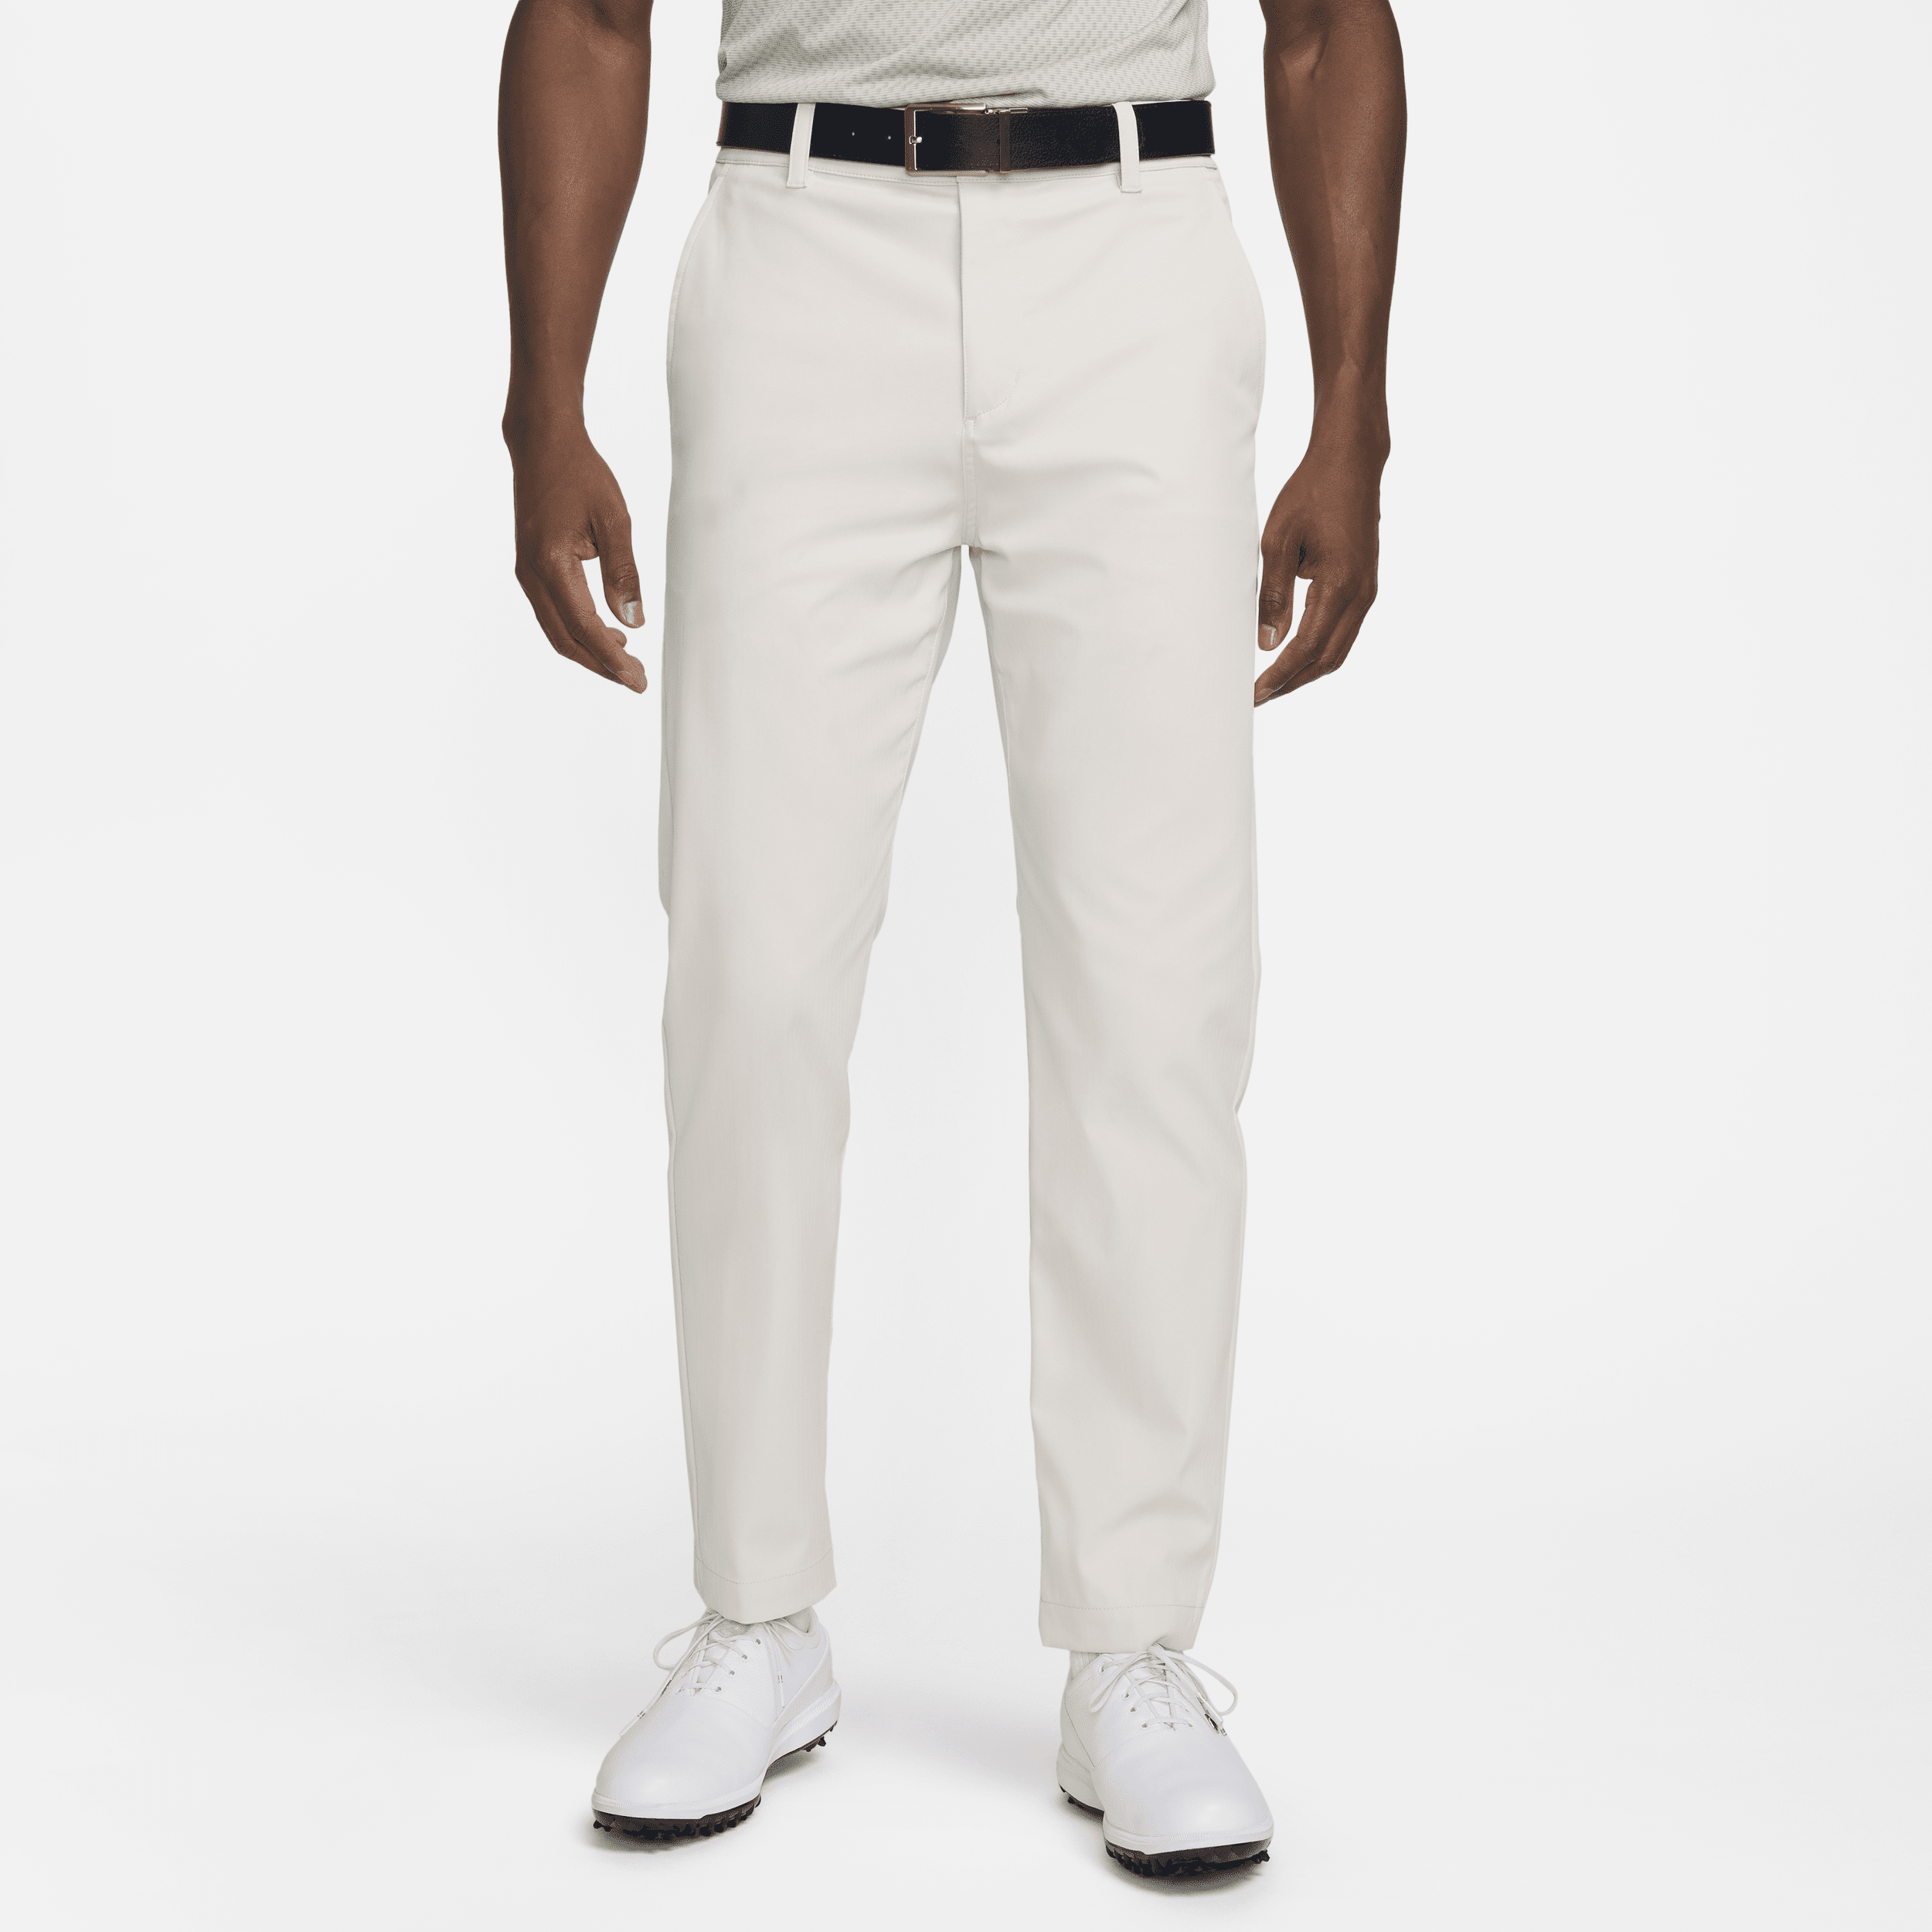 Nike Men's Tour Repel Chino Slim Golf Pants In Grey